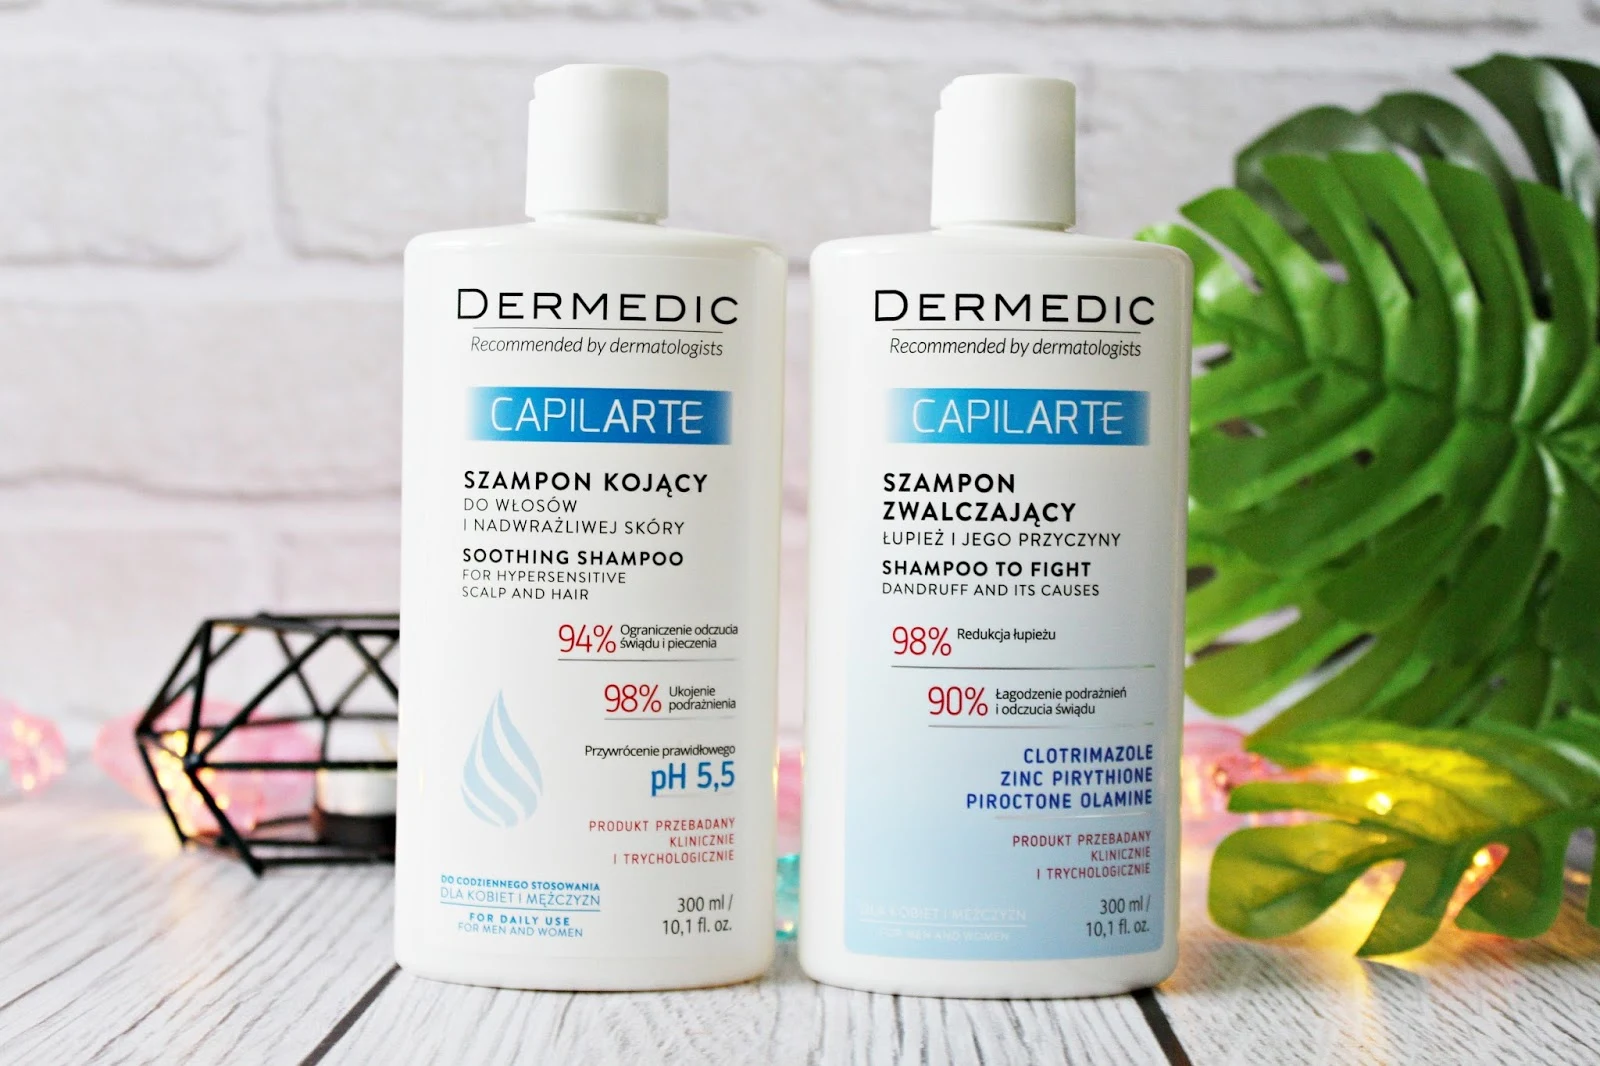 DERMEDIC CAPILARTE - szampon kojący do włosów i nadwrażliwej skóry & szampon zwalczający łupież i jego przyczyny